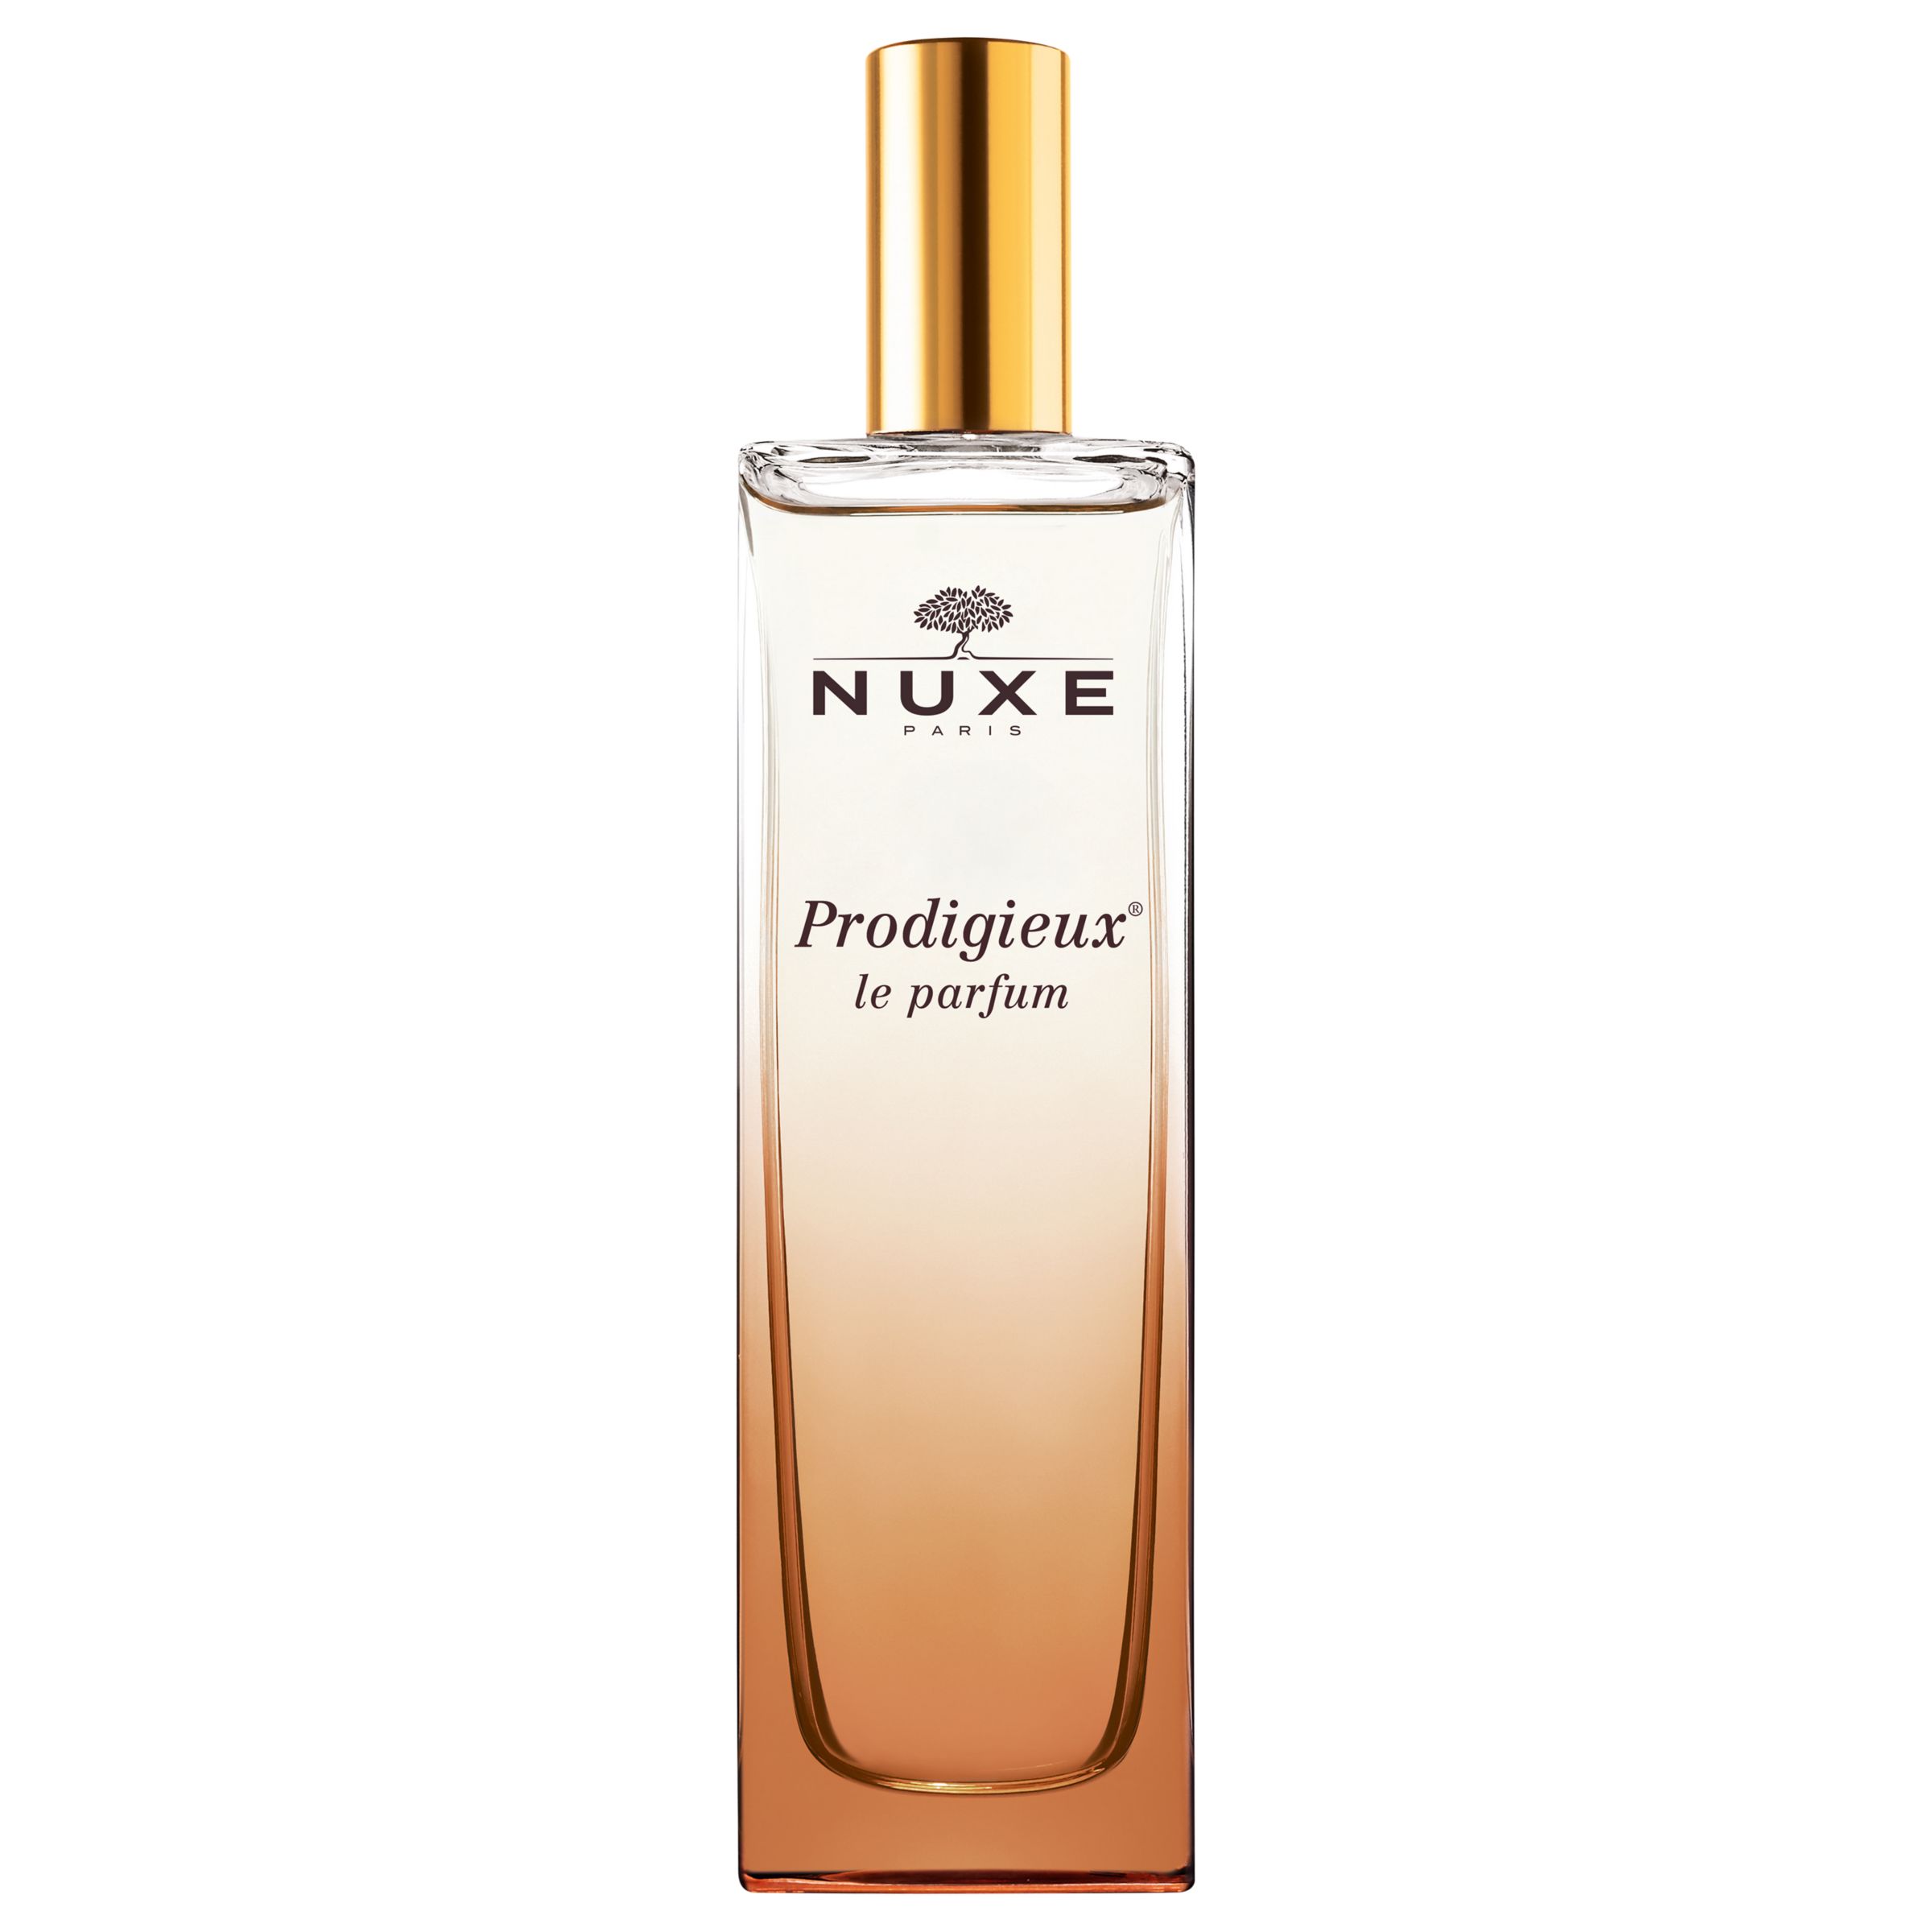 NUXE Prodigieux® Le Parfum, 50ml 1